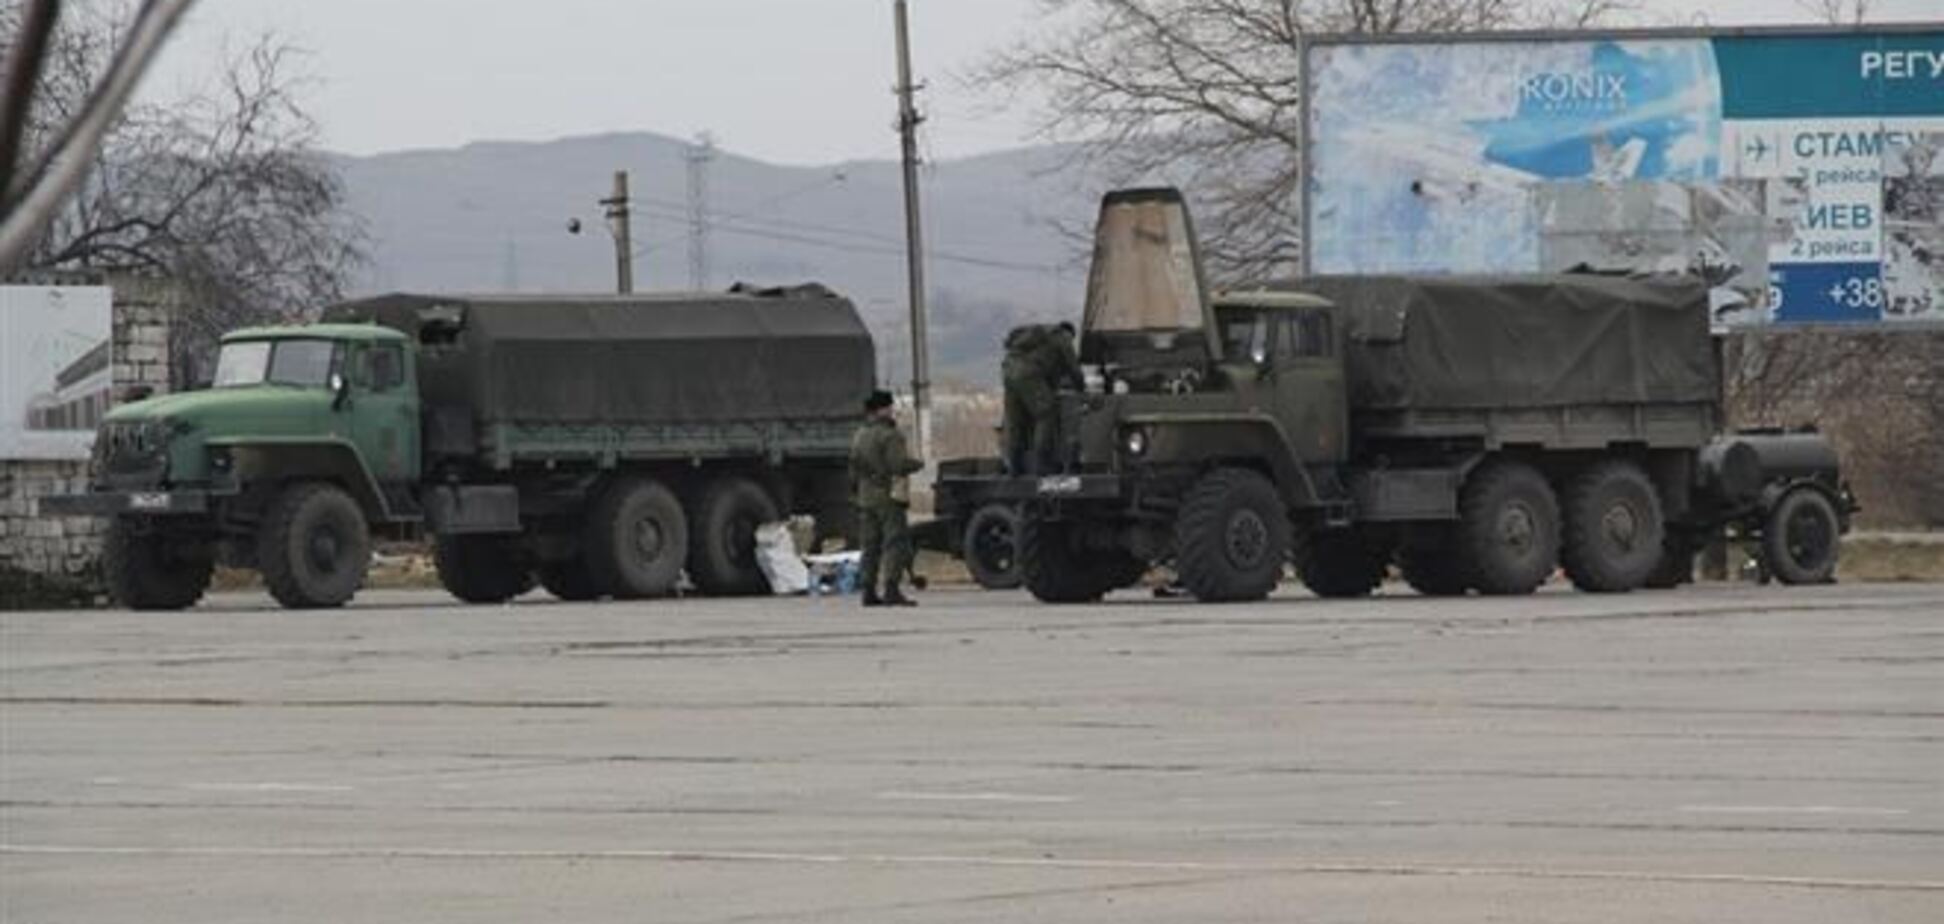 Российские военные покидают паромную переправу Керчи